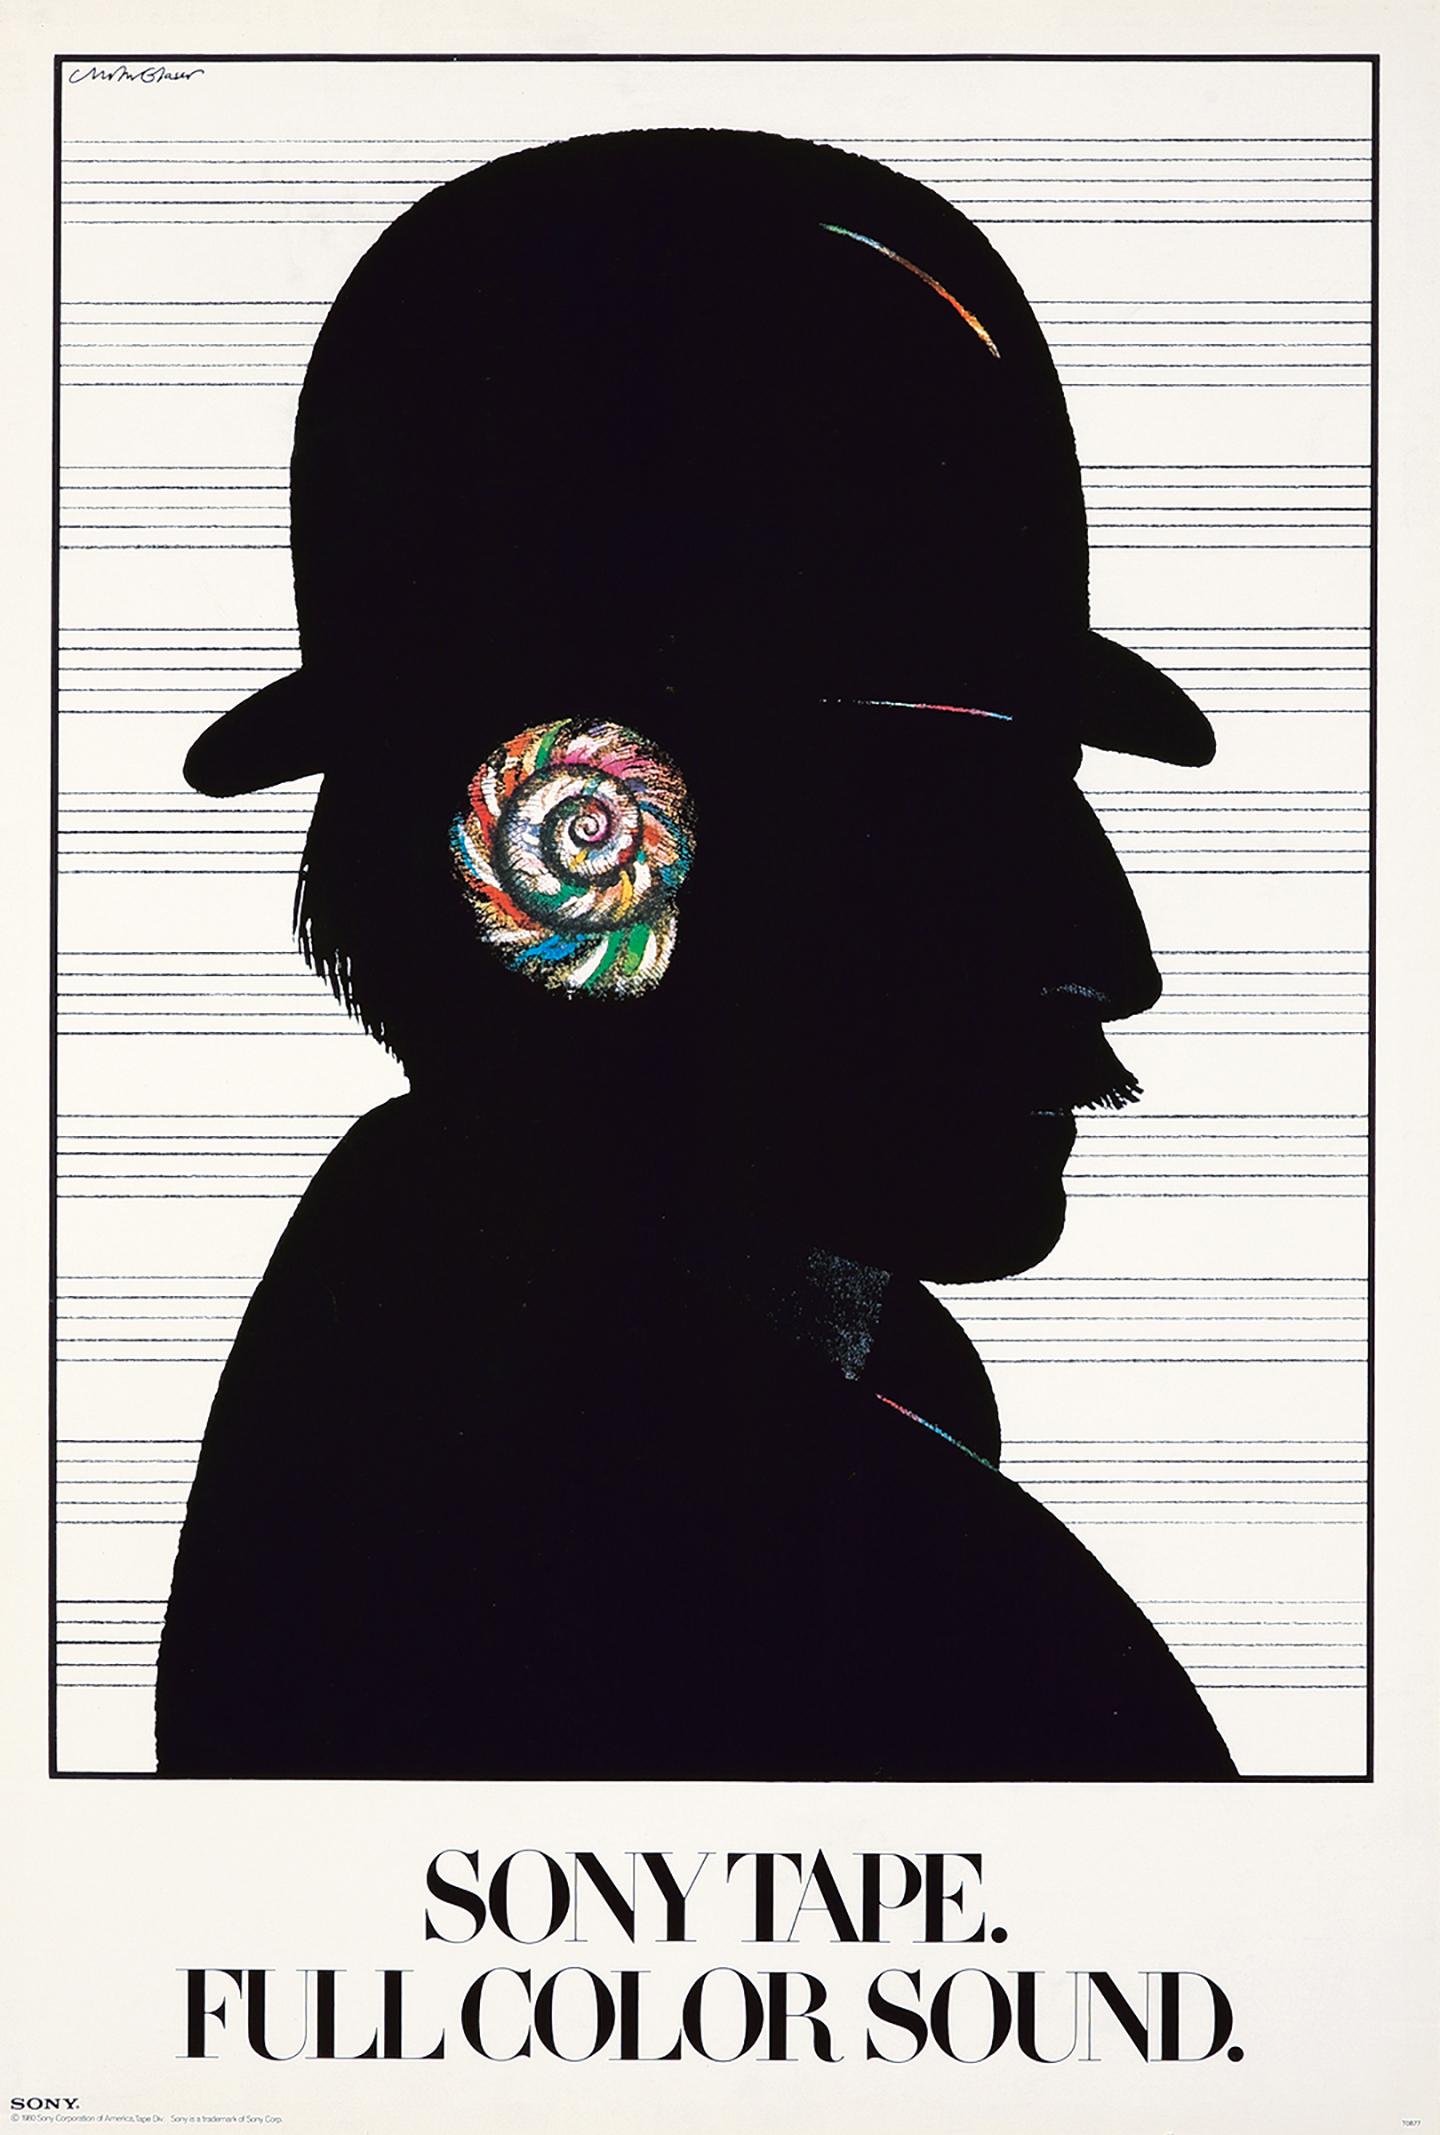 Milton Glaser Bande Sony, affiche sonore en couleur 1980 :
Affiche originale Vintage des années 1980 conçue par Milton Glaser pour la marque mondialement connue Sony. Un dessin publicitaire classique de Milton Glaser représentant le profil d'un